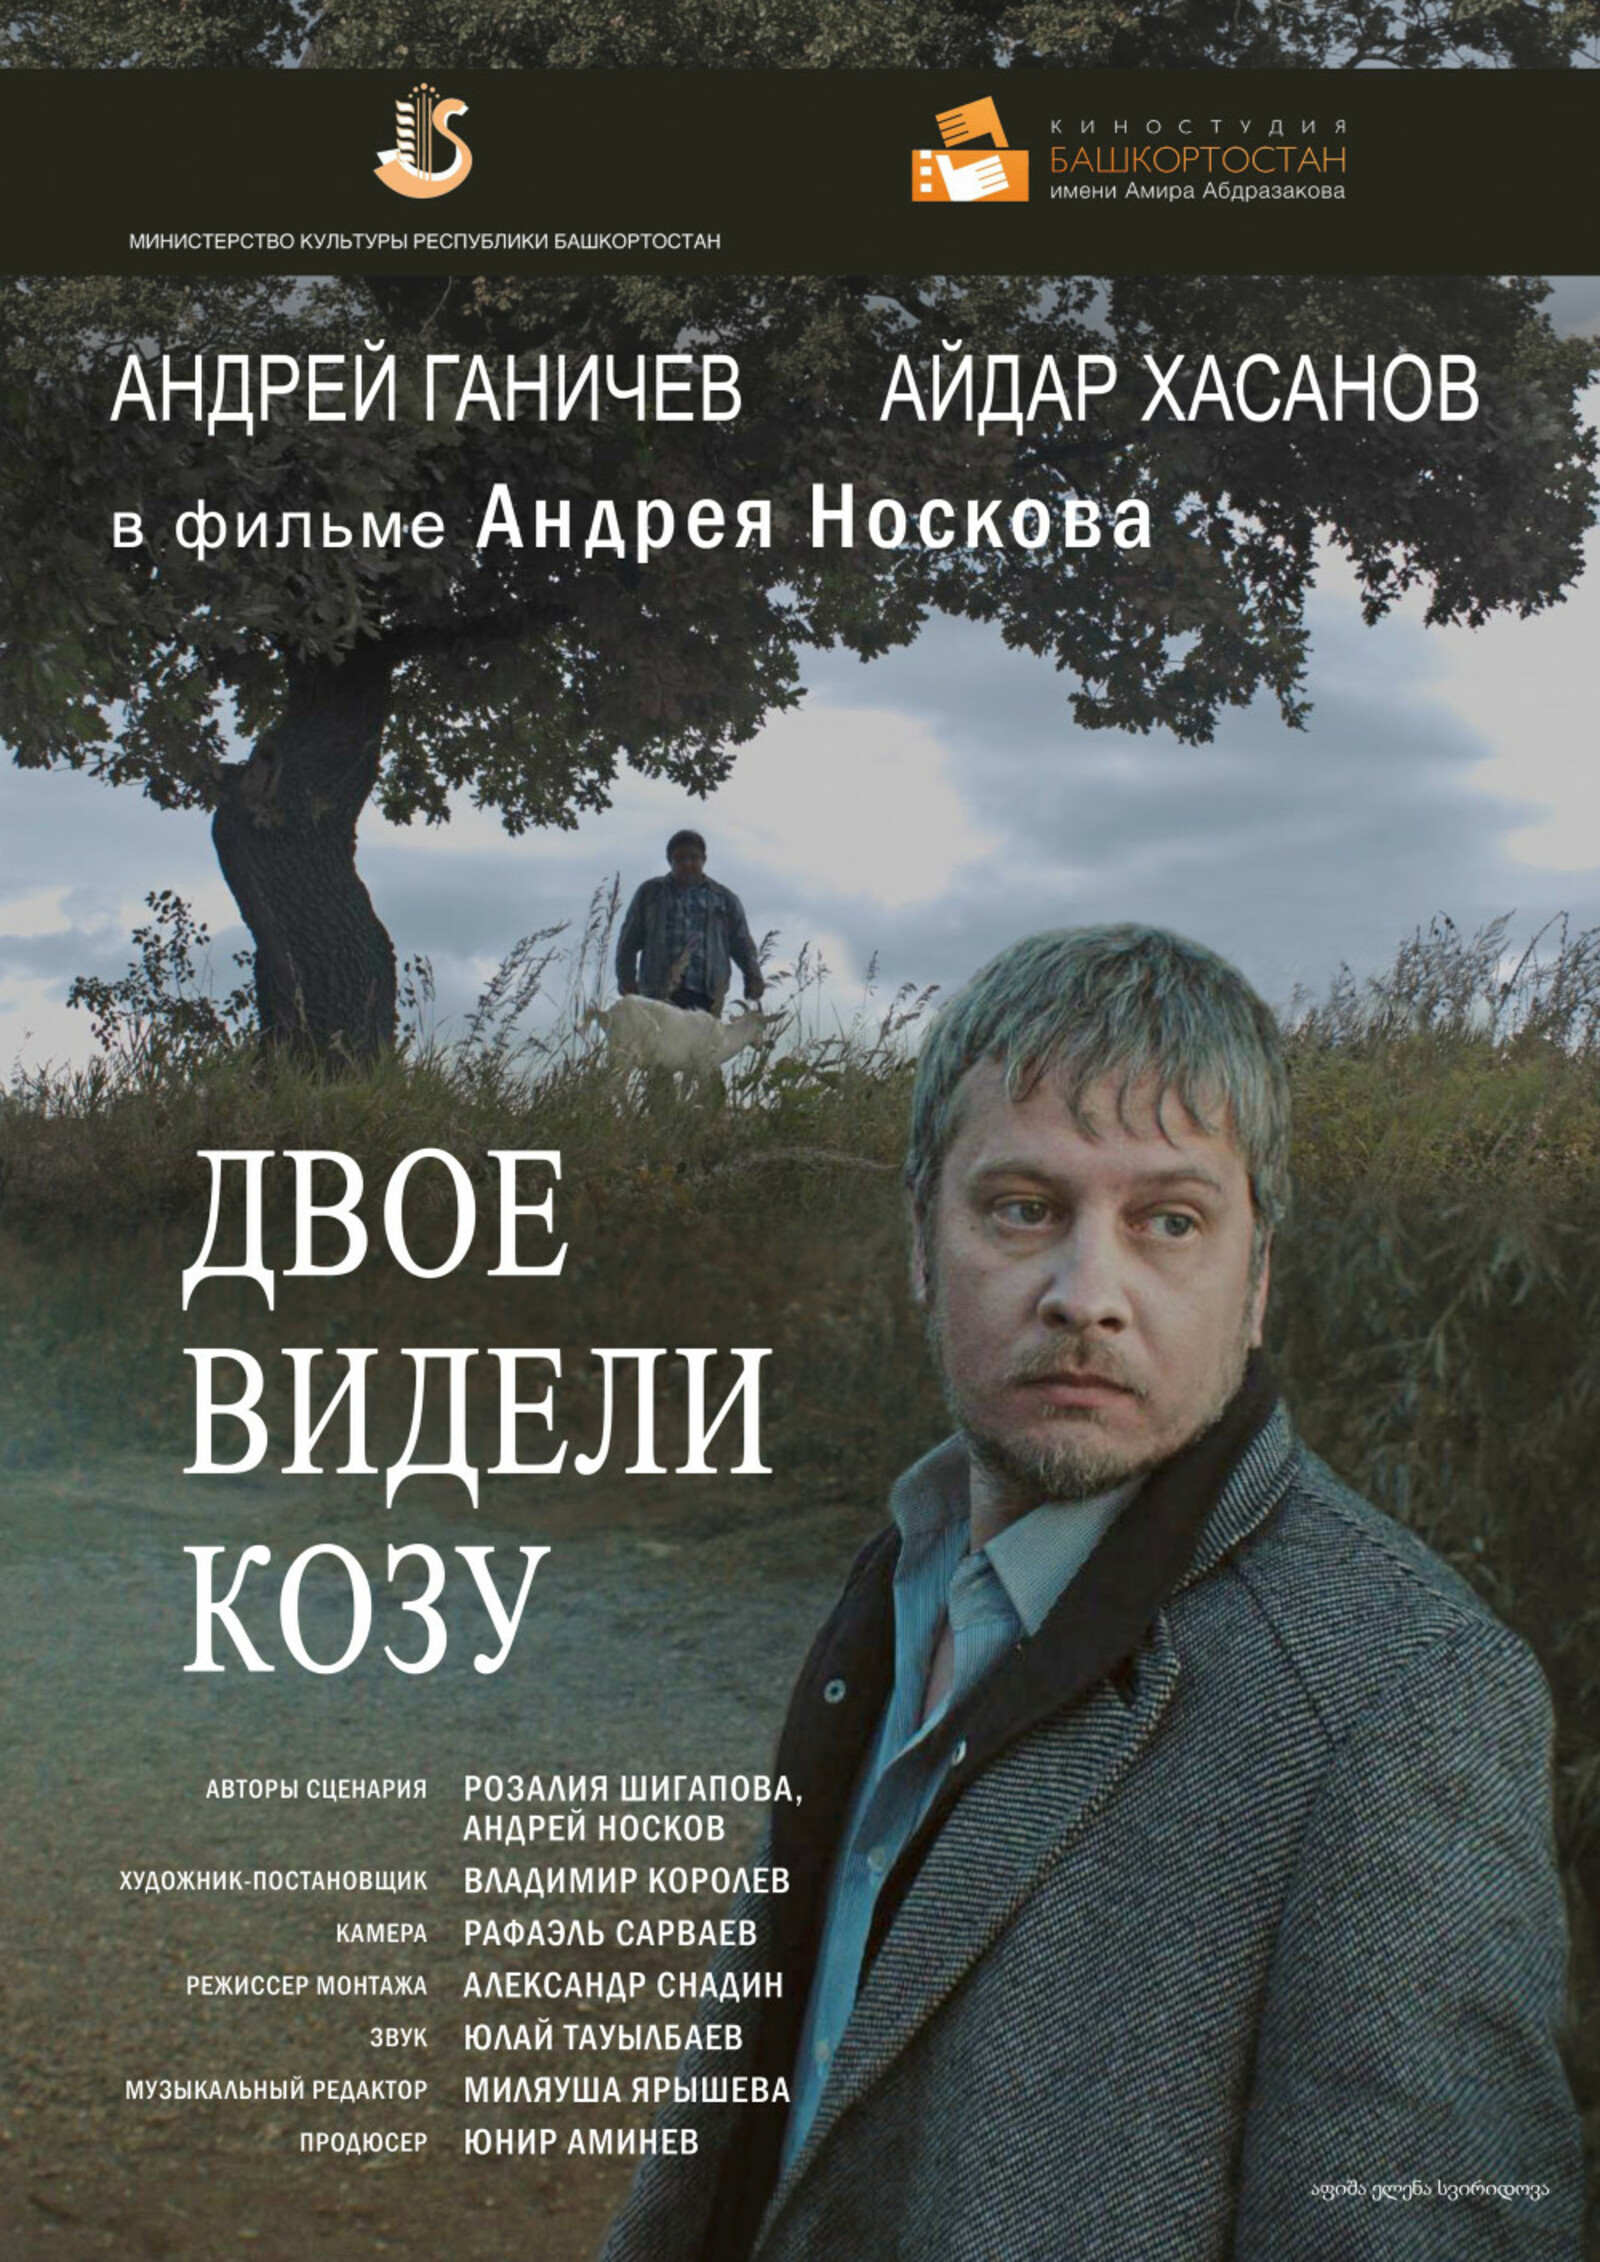 Фильм «Двое видели козу» киностудии «Башкортостан» стал лауреатом XV Чебоксарского международного кинофестиваля